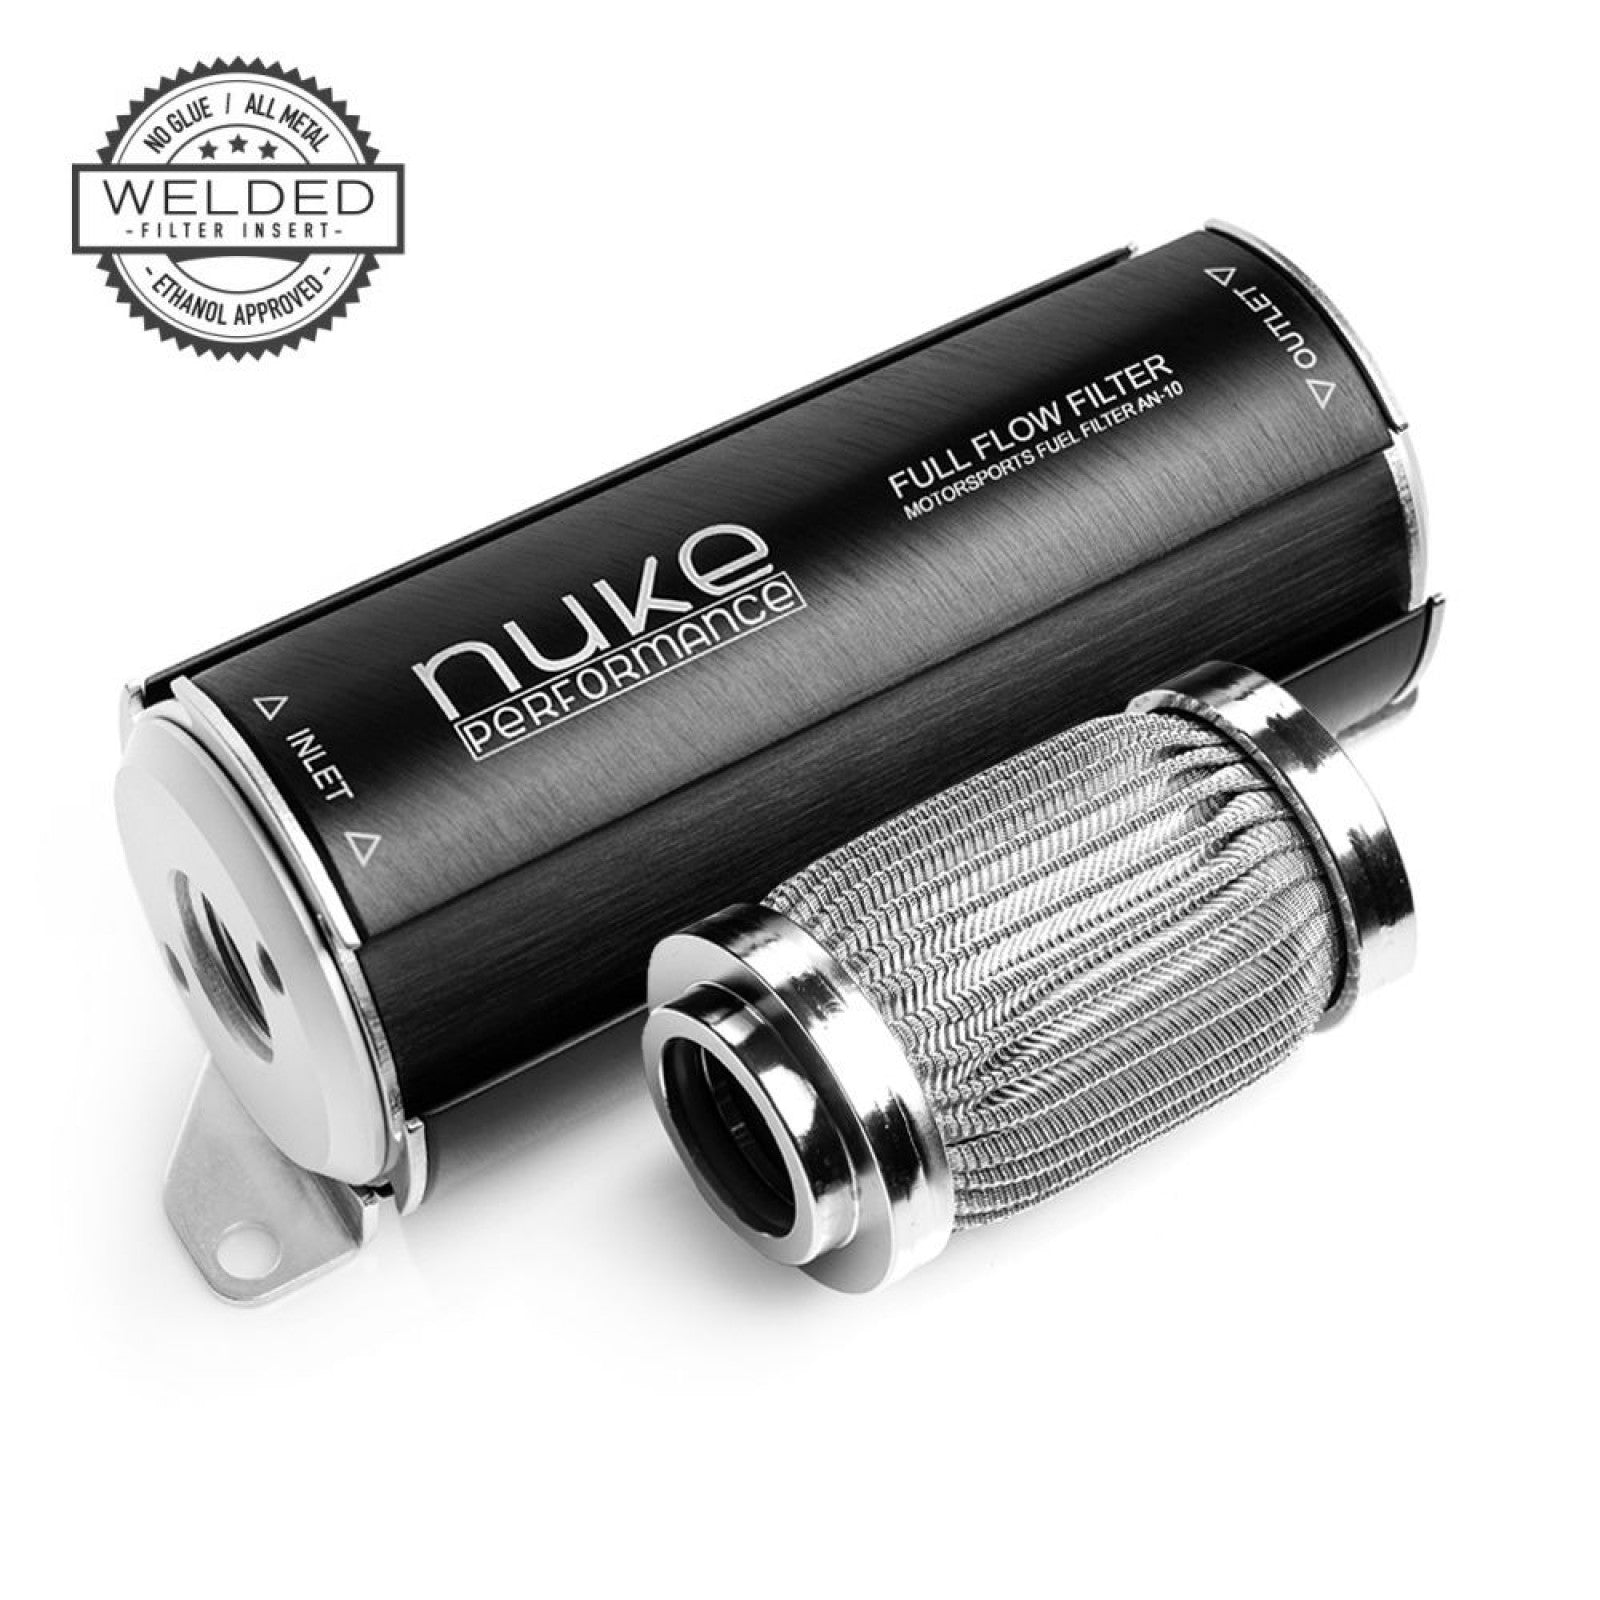 Filtro de combustible Nuke Performance 10 micras AN-10 - Elemento filtrante de celulosa